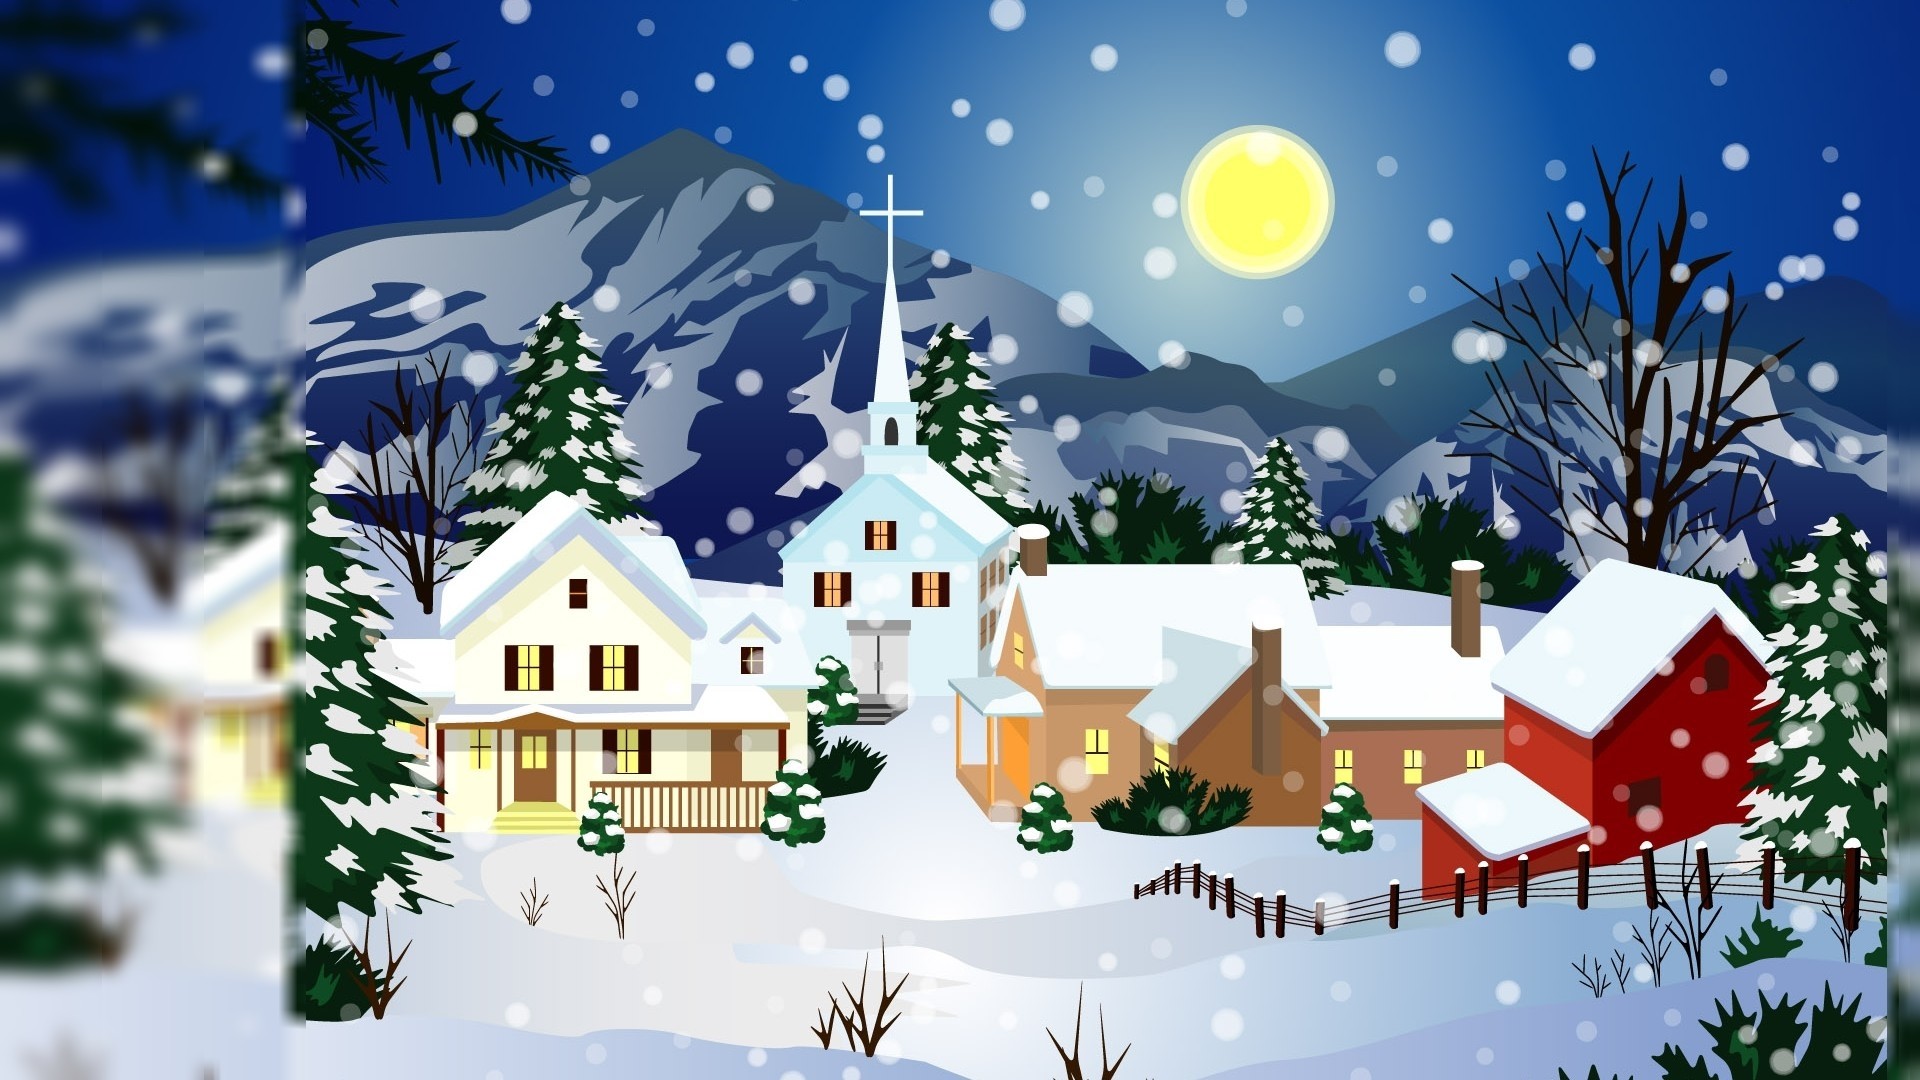 61 Animated Christmas Wallpapers on WallpaperPlay